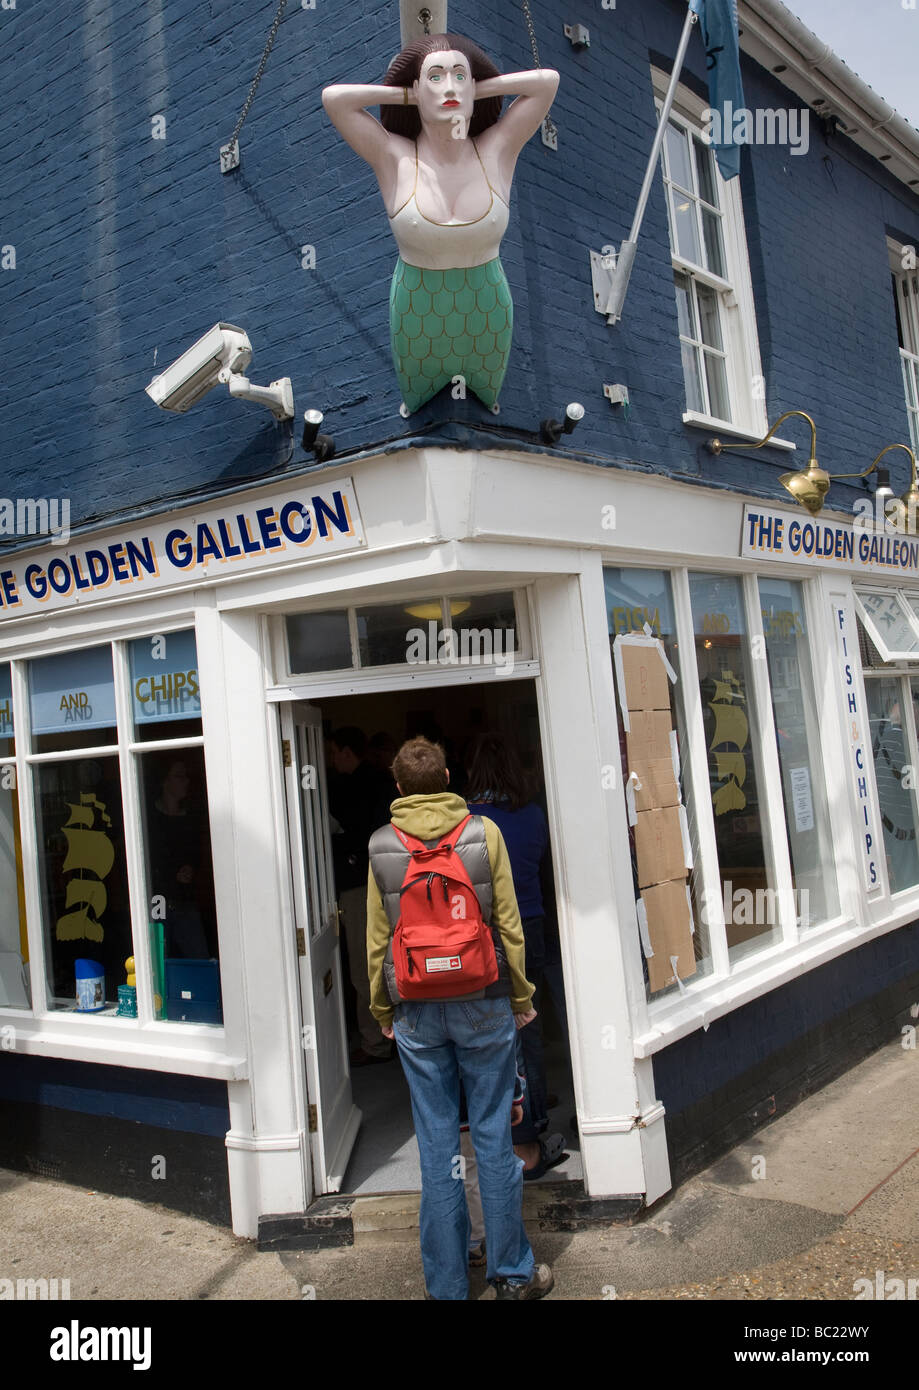 Golden Galleon chip shop Aldeburgh Suffolk England Stock Photo